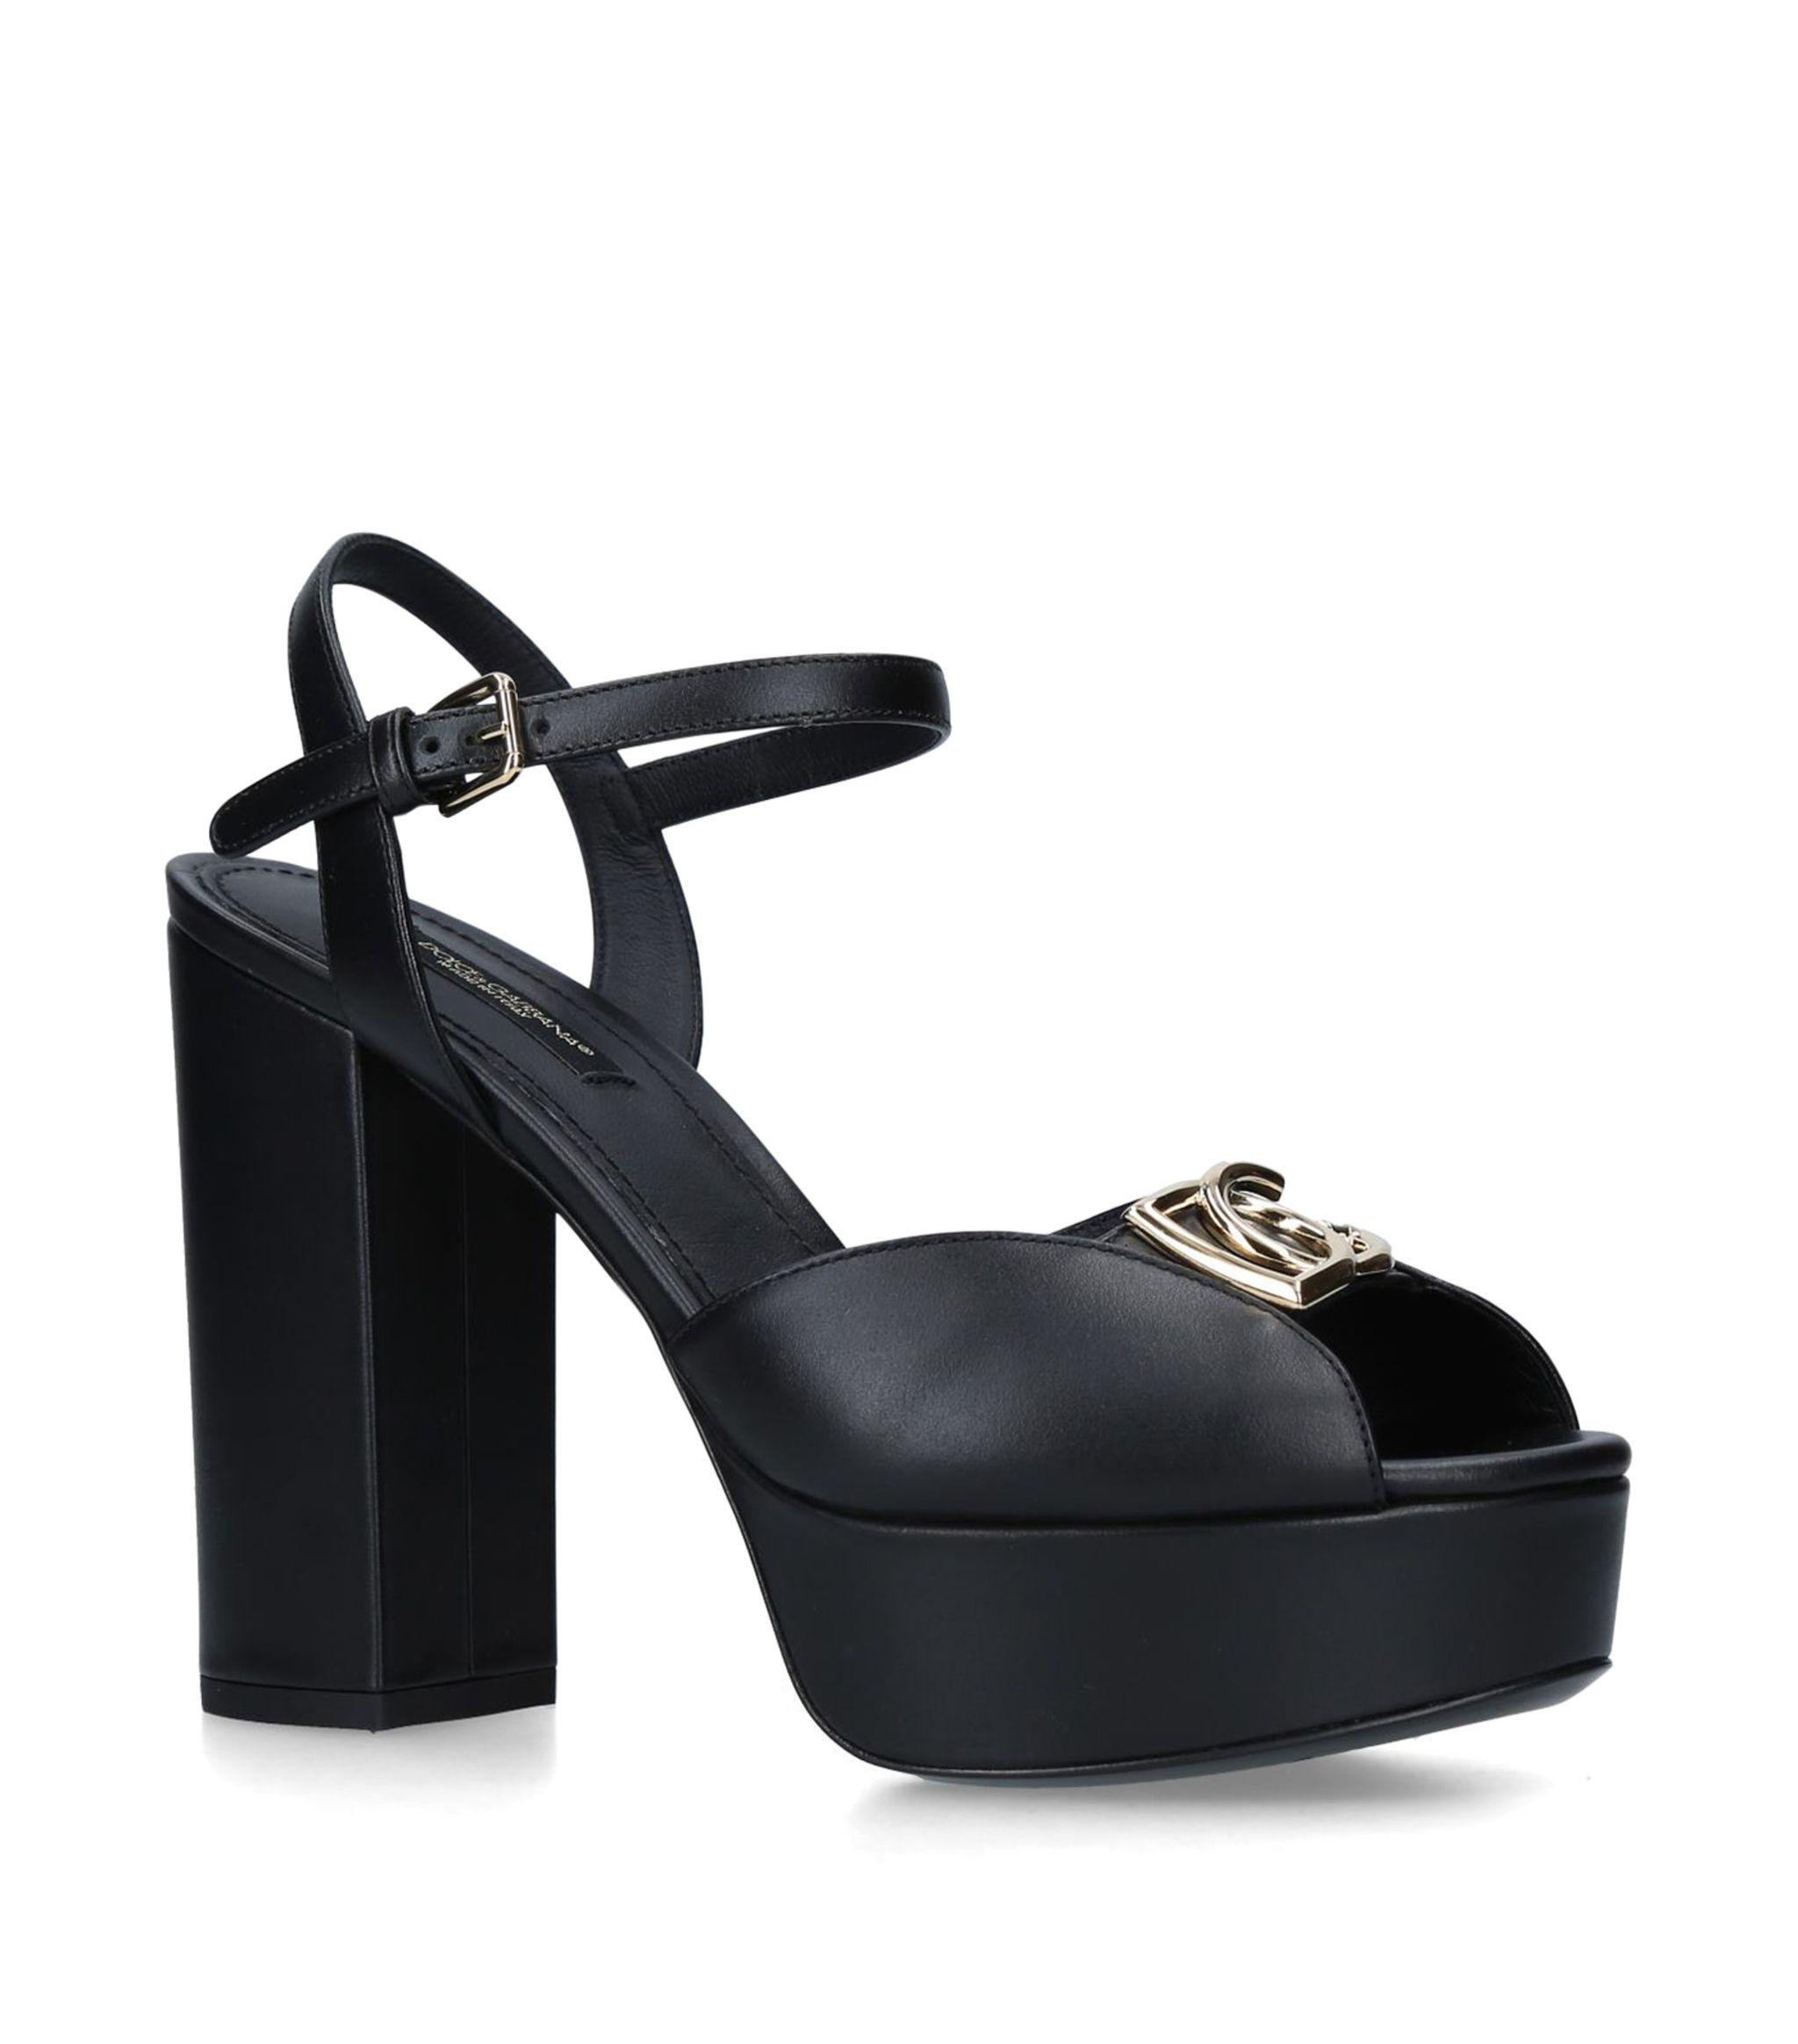 Dolce & Gabbana Leather Millennials Platform Sandals 120 in Black - Lyst